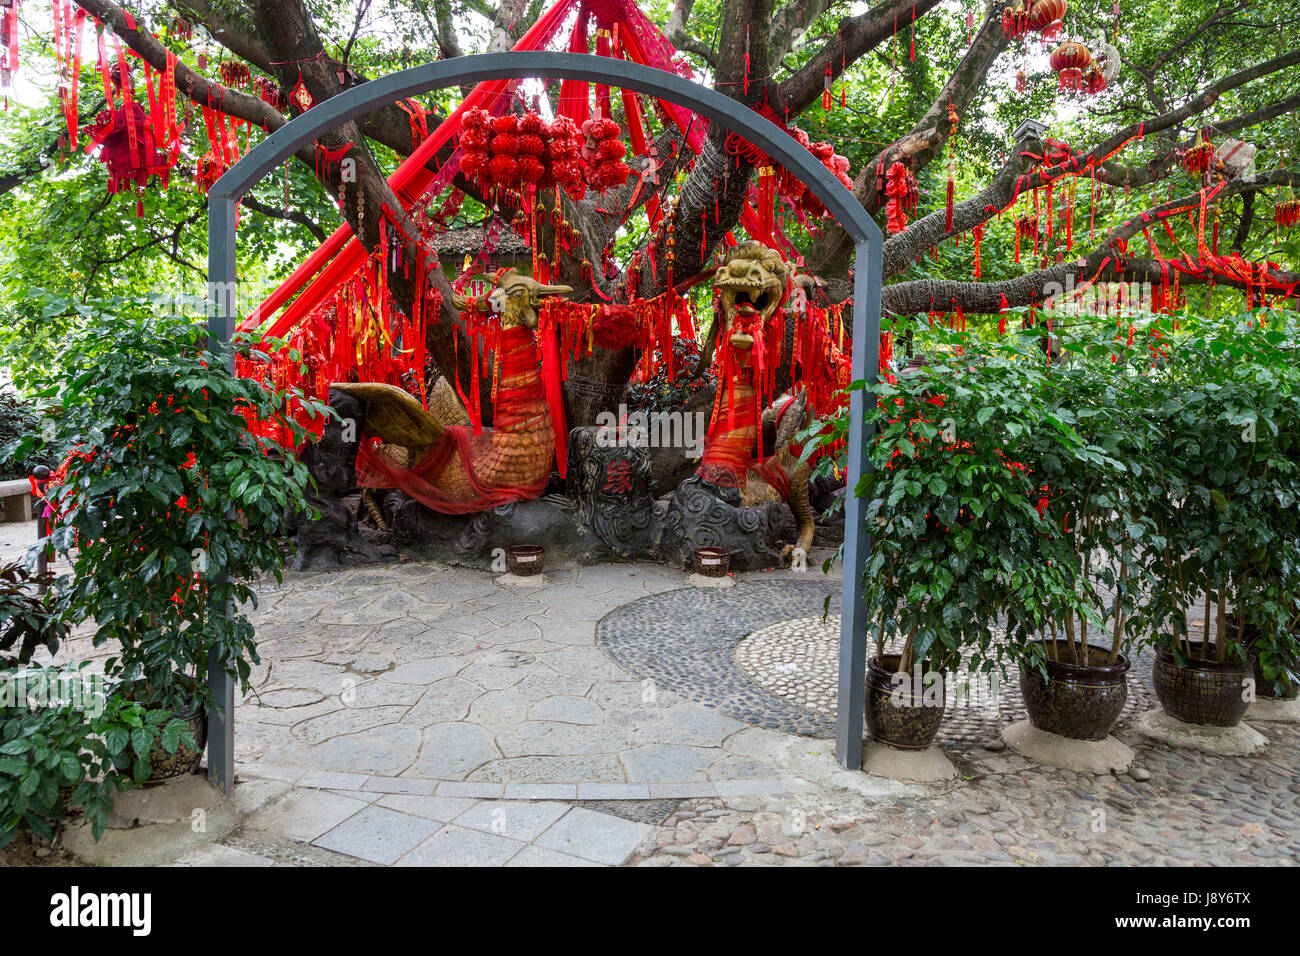 Guilin, Chine. Elephant Trunk Hill Park. Rubans rouges accrochés sur arbre, demandant un souhait pour la nouvelle année. Phoenix chinois dans le centre. Banque D'Images